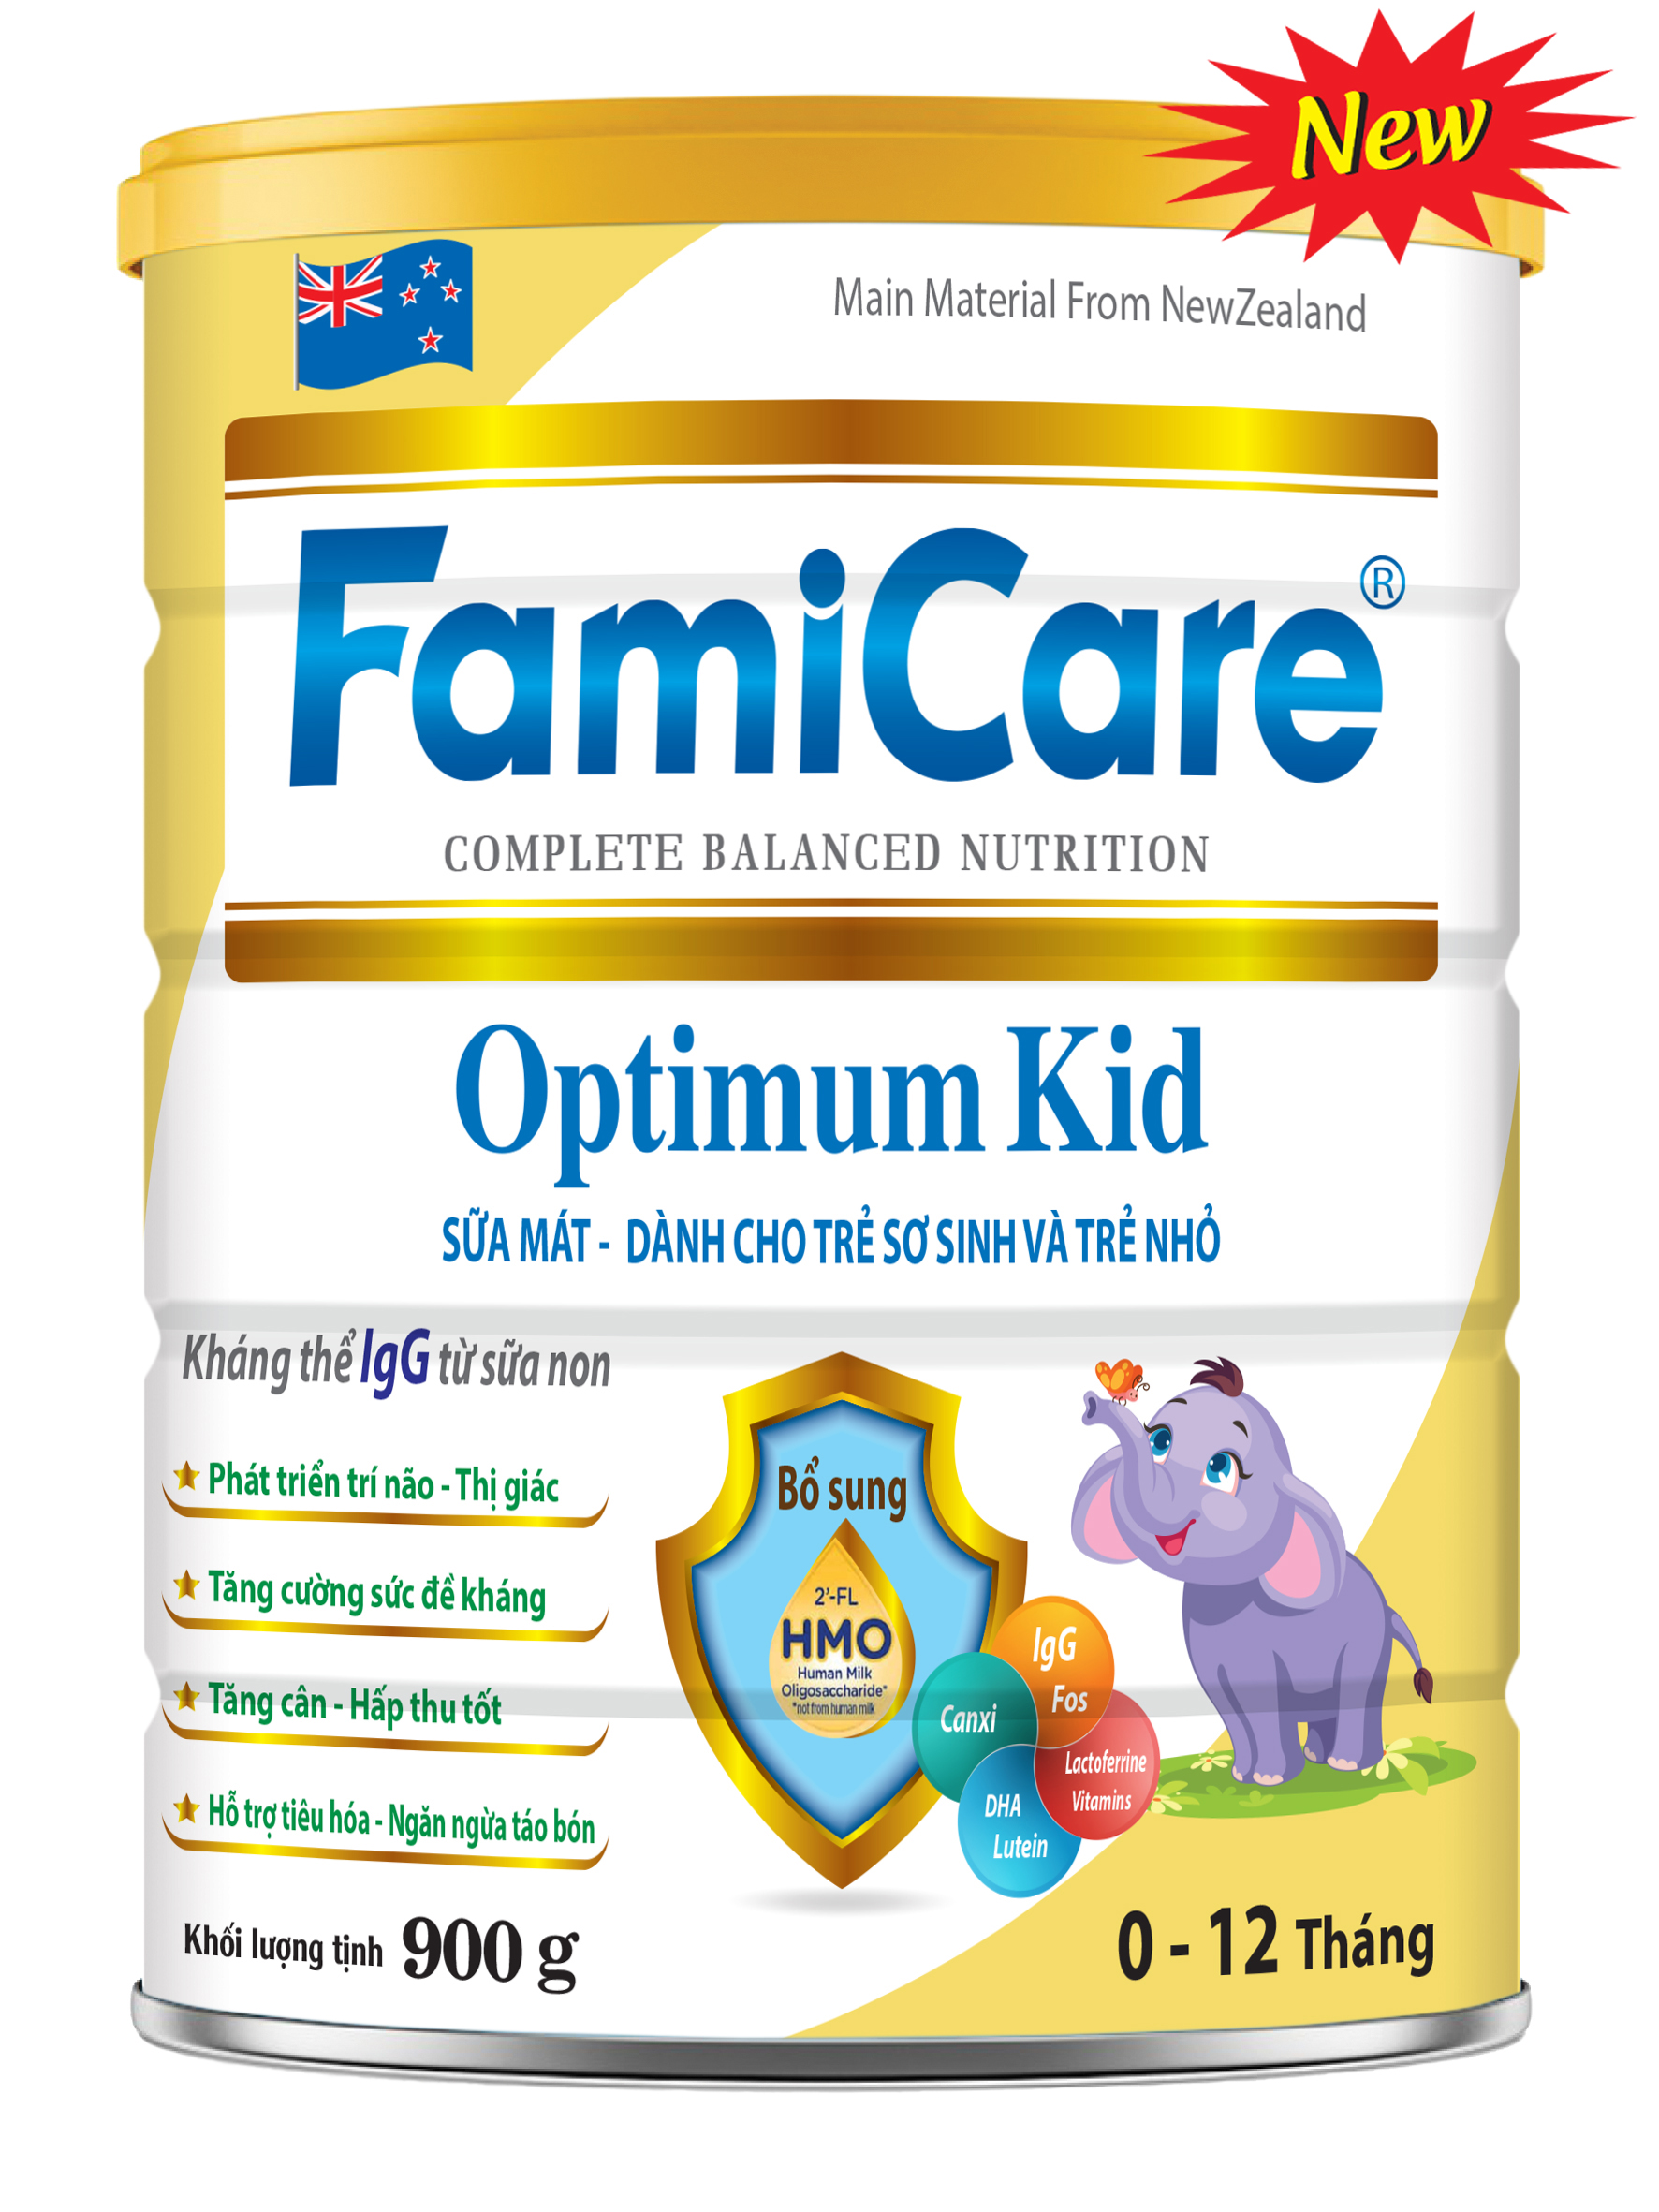 FamiCare Optimum Kid (New)